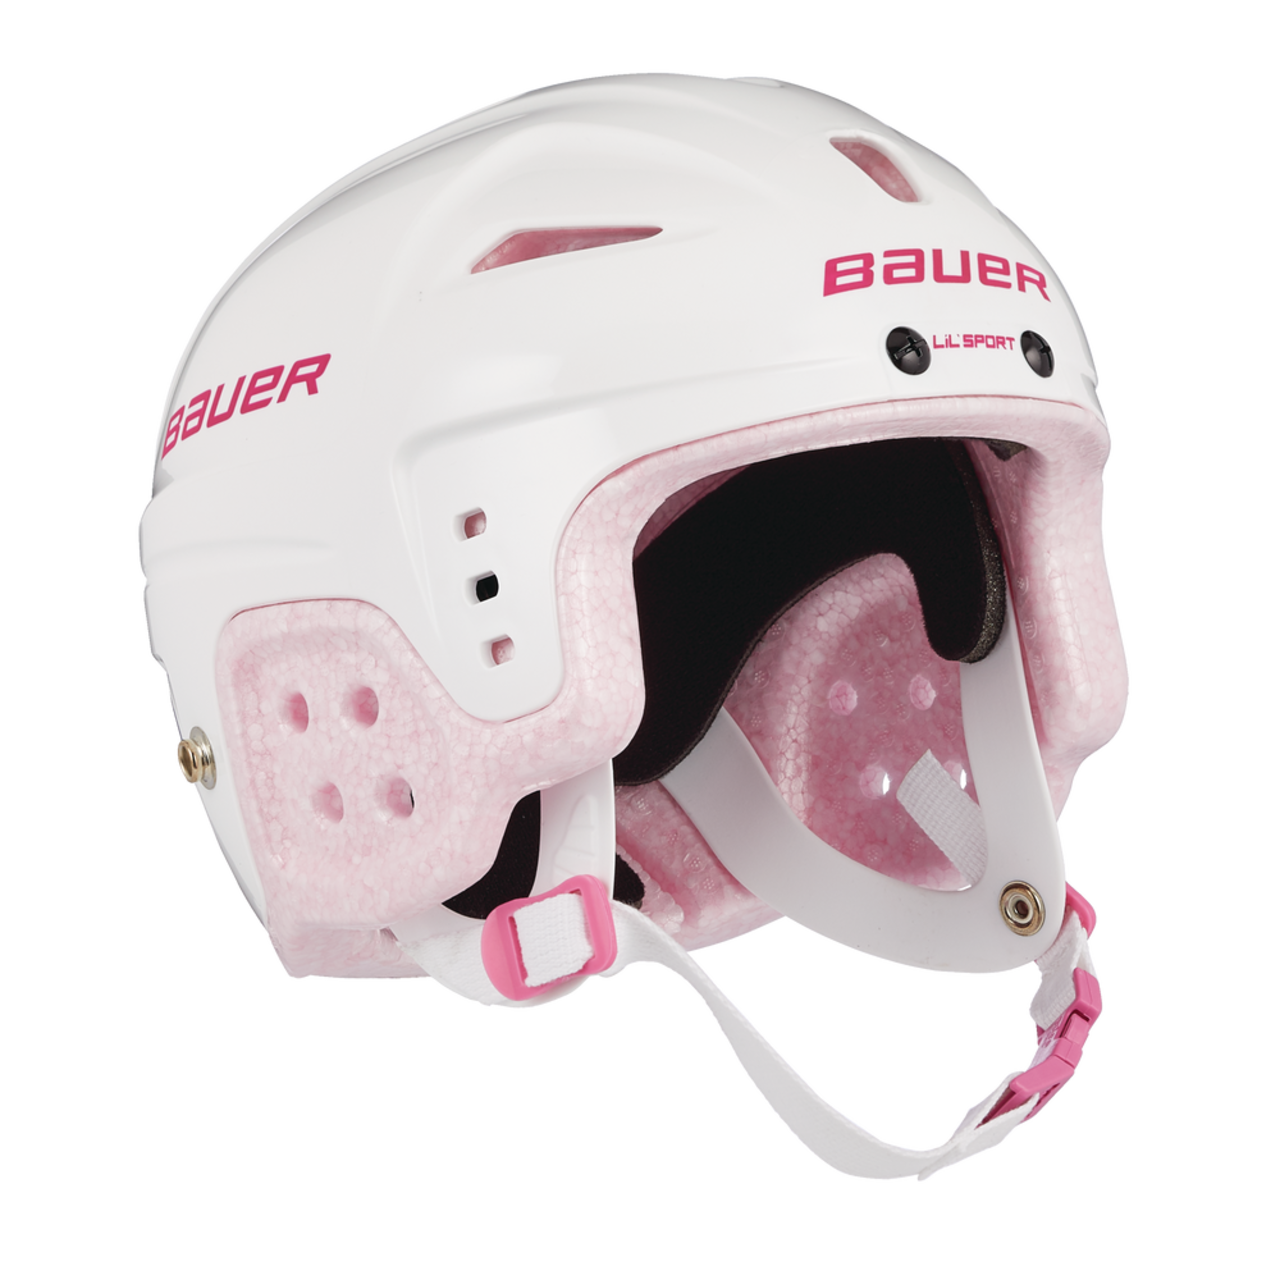 Casque de hockey Bauer Lil' Sport, jeunes, blanc et rose